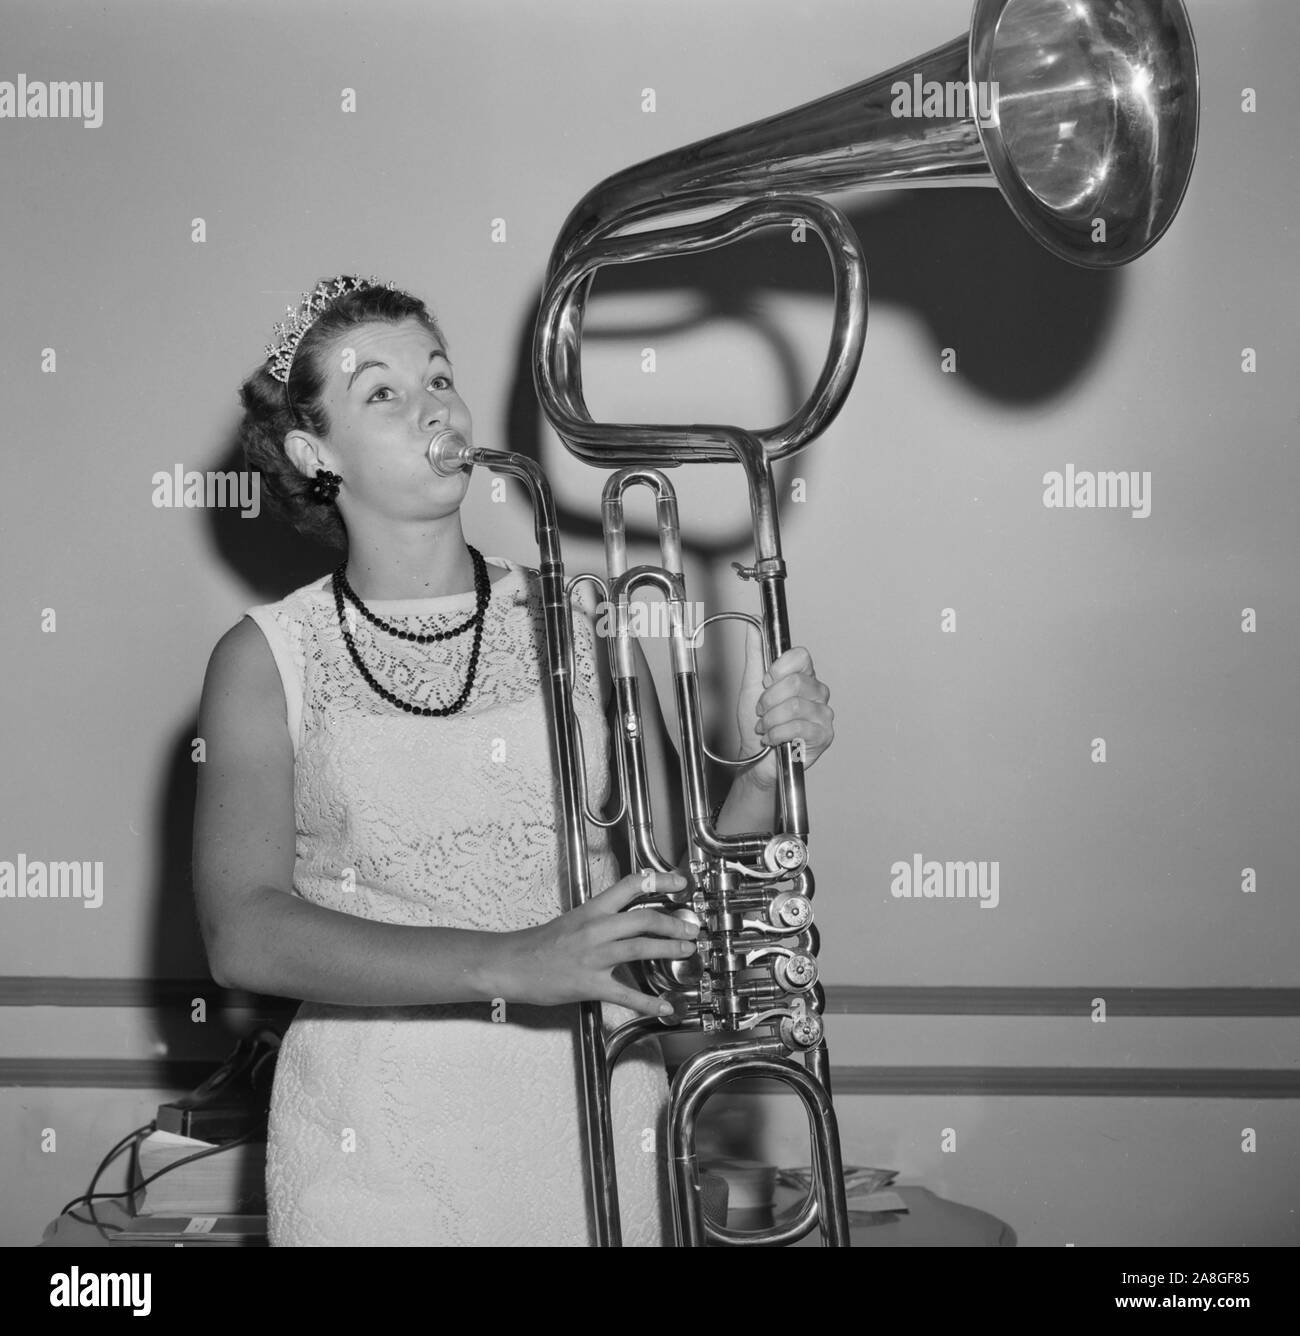 Eine junge Frau, vielleicht ein schönheitswettbewerb Kandidat, bläst einem ungewöhnlich konstruierte Horn aus Stücken von anderen Band Instrumenten gemacht, Ca. 1960. Stockfoto